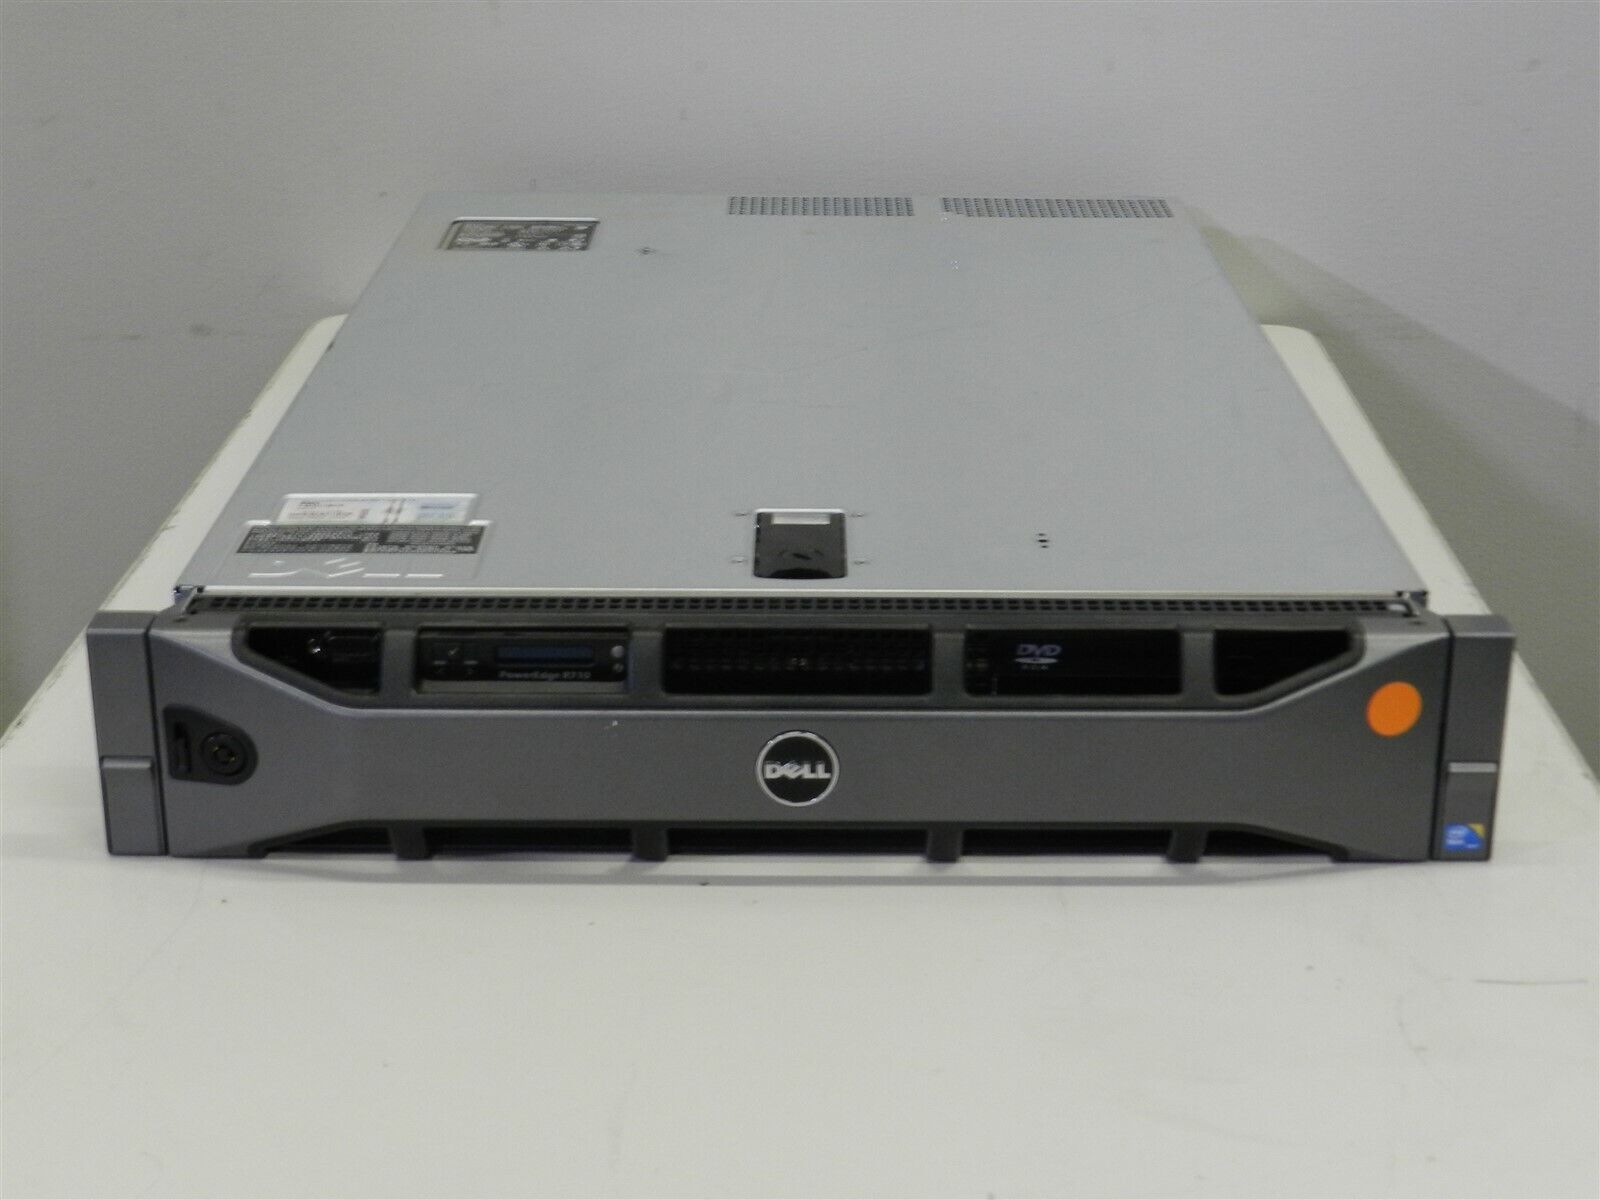 Dell PowerEdge R710 Rack Server Intel Xeon 24GB RAM 1TB HDD PERC RAID Linux